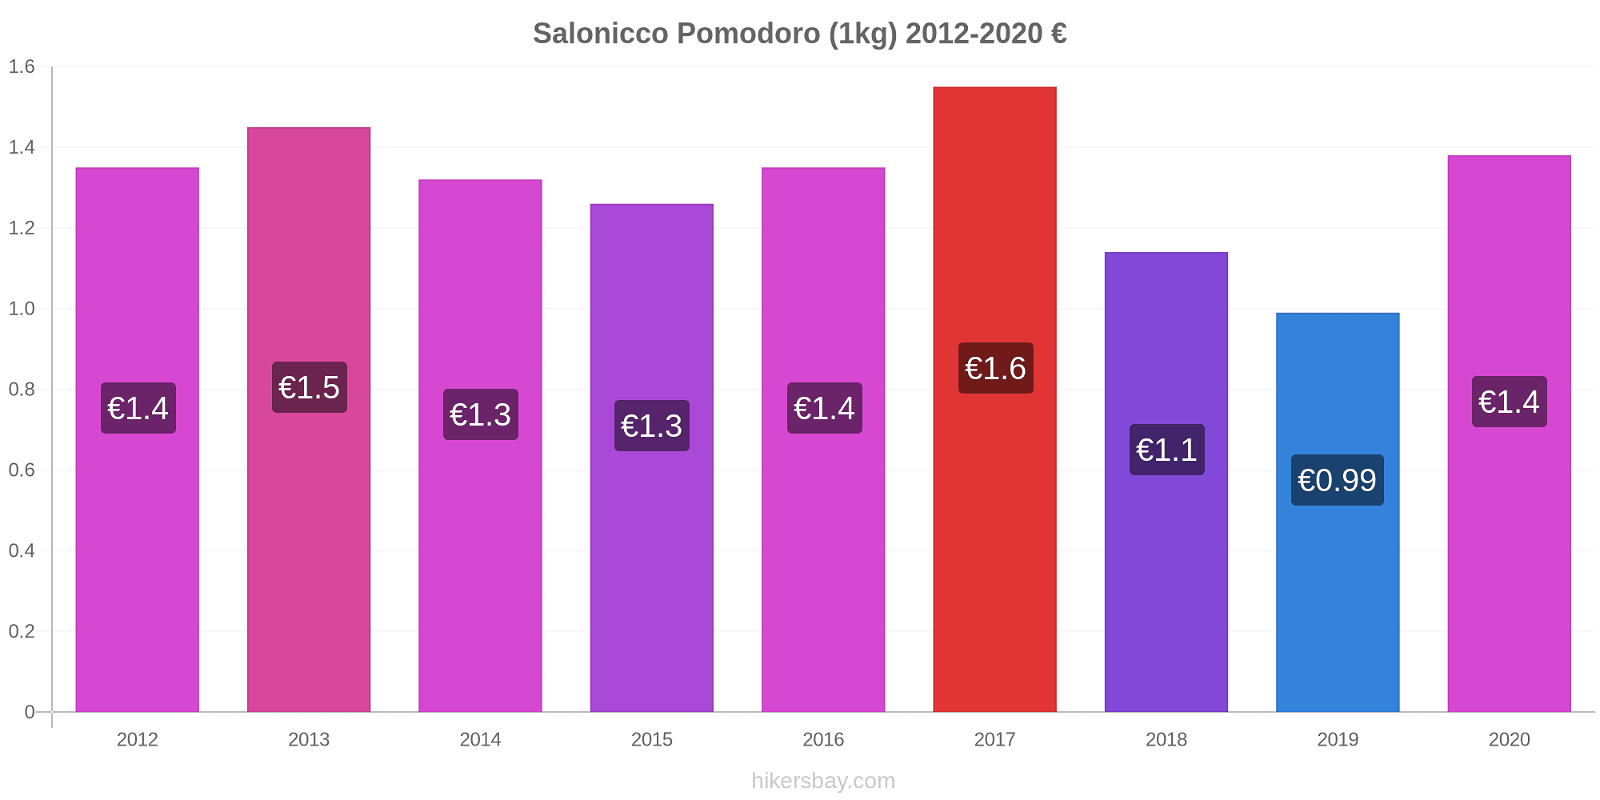 Salonicco variazioni di prezzo Pomodoro (1kg) hikersbay.com